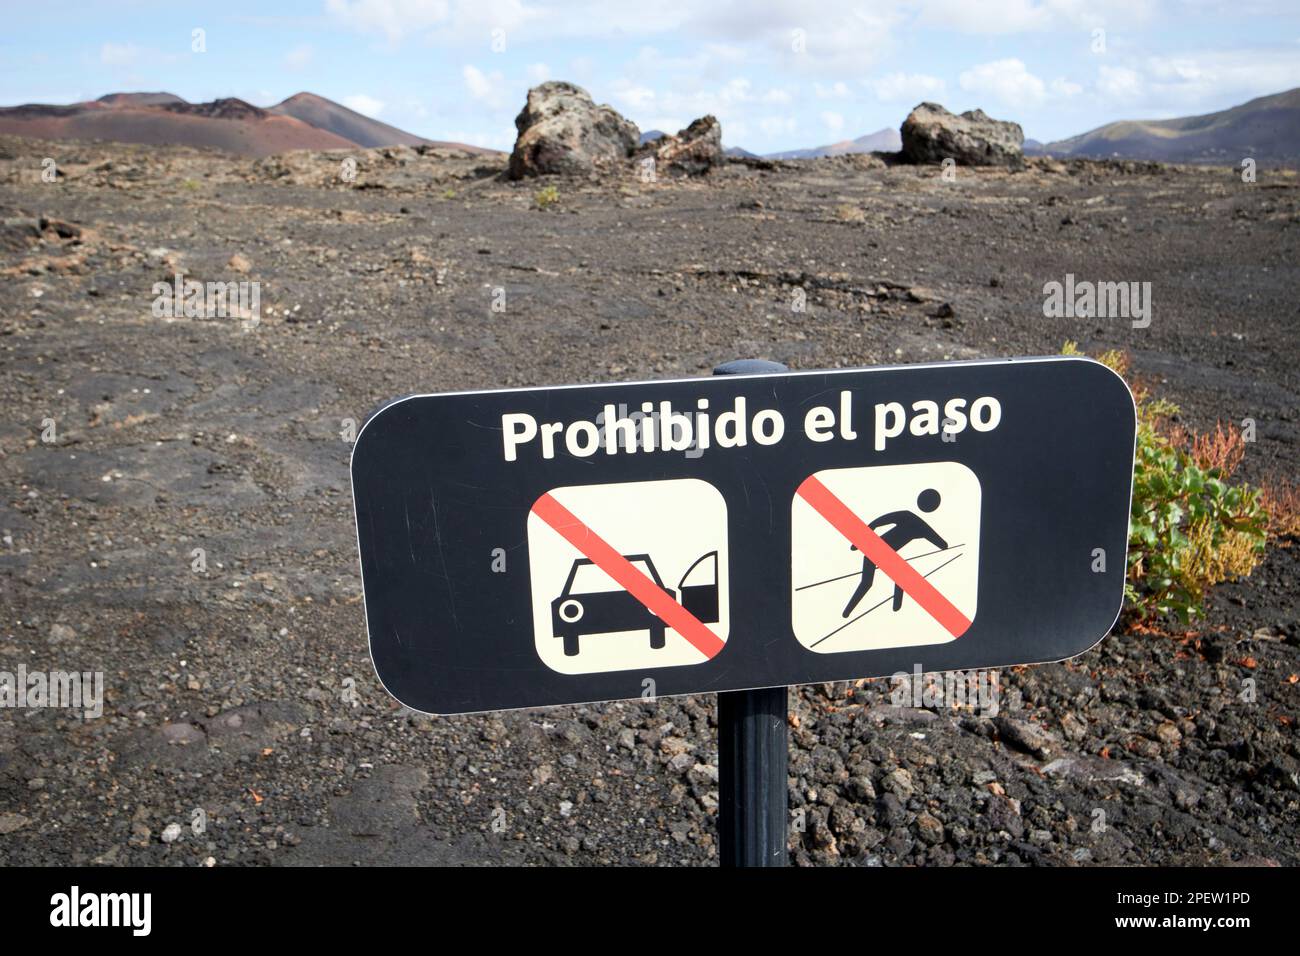 prohibido el paso no driving no walking in lava fields nature reserve parque nacional de timanfaya Lanzarote, Canary Islands, Spain Stock Photo